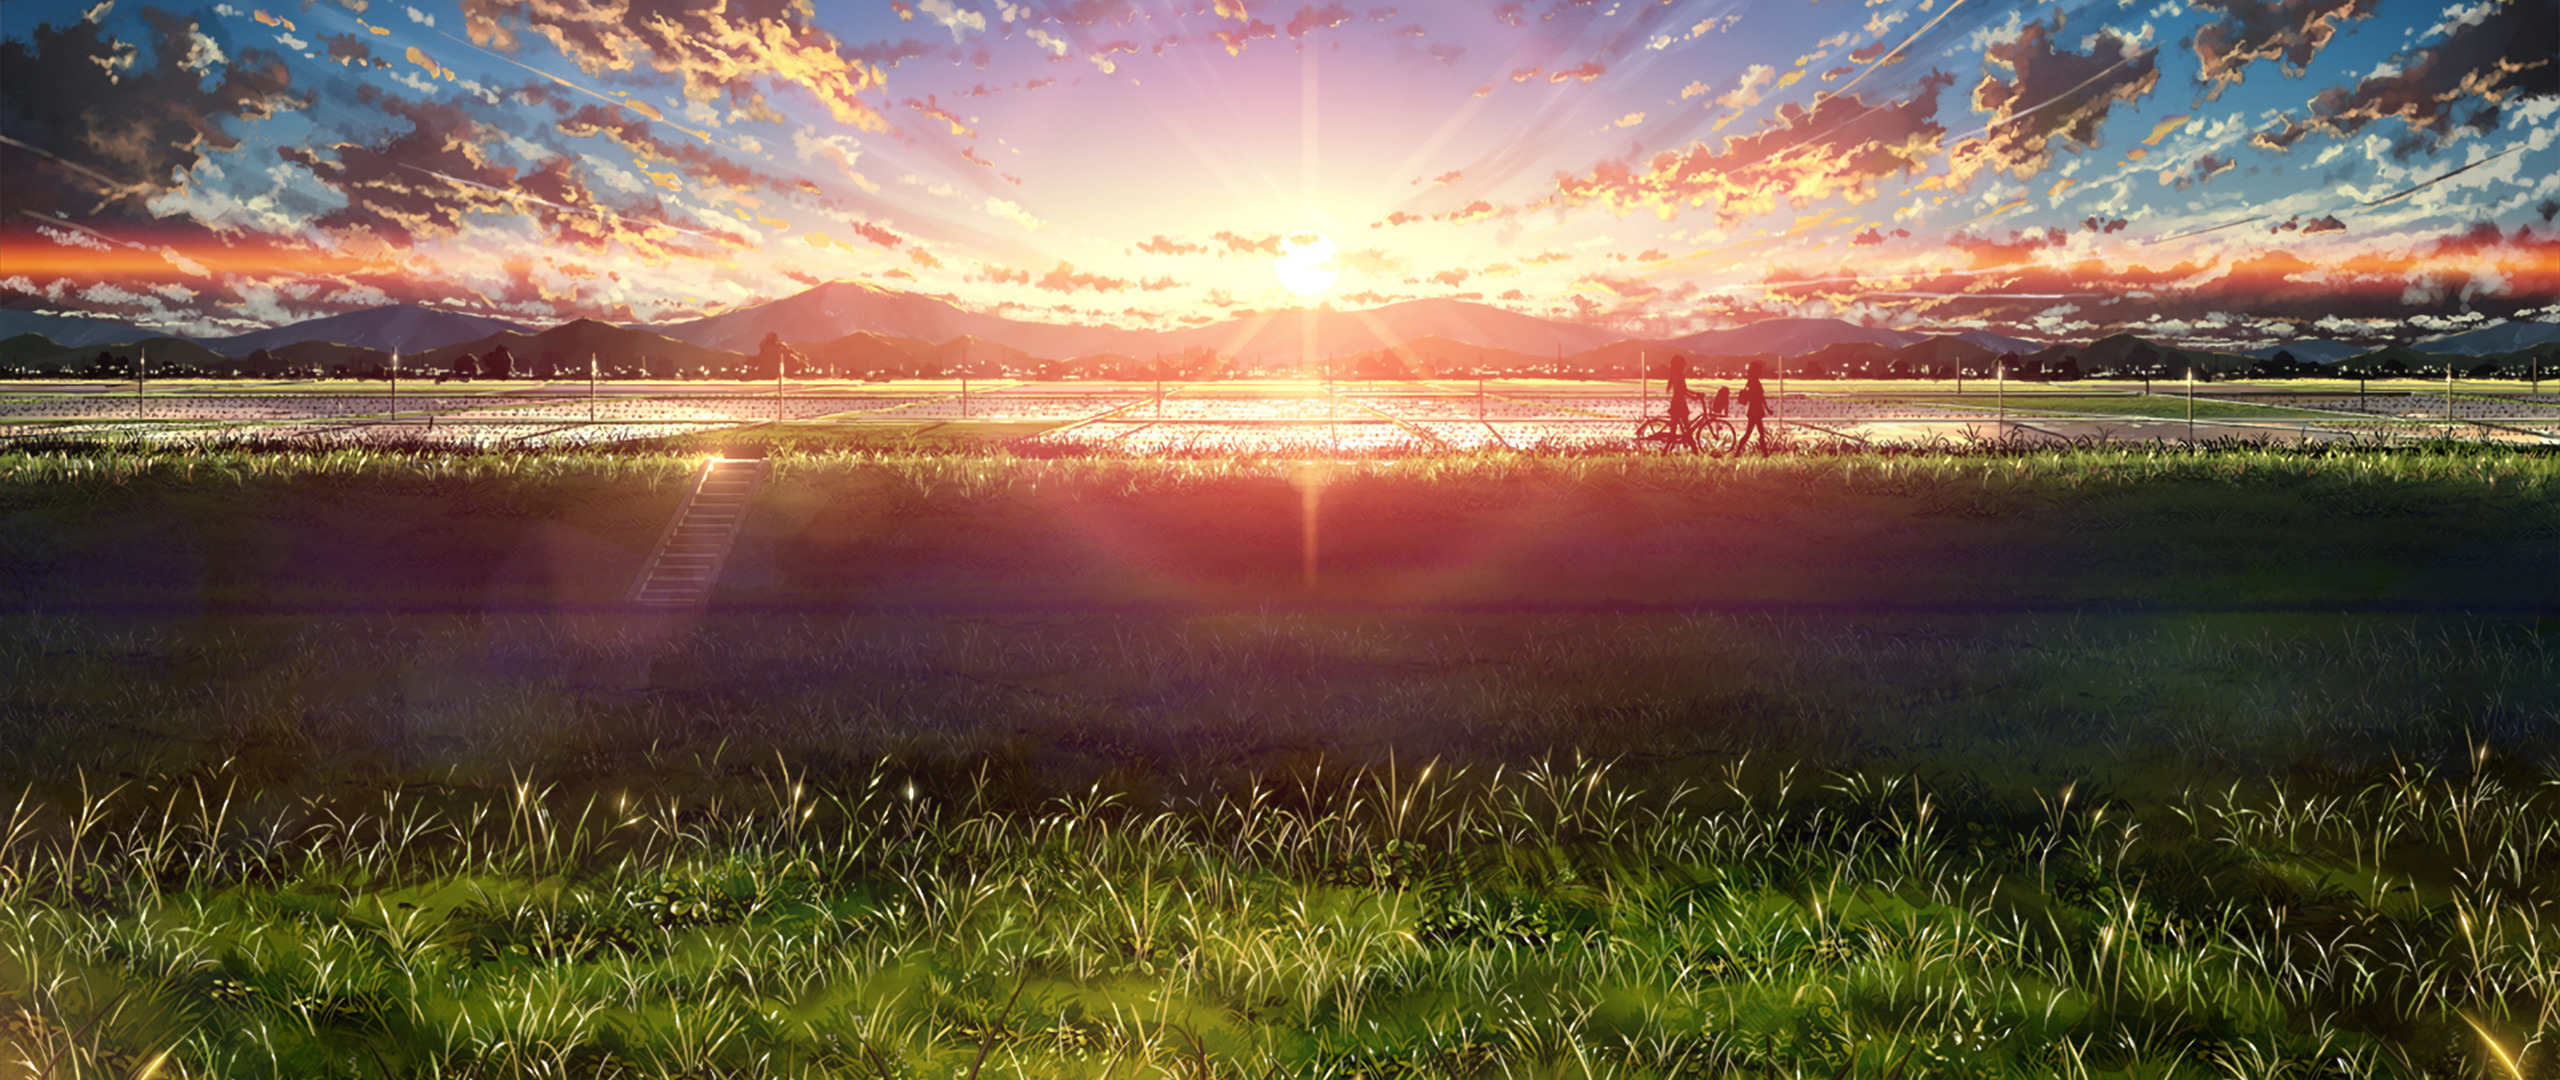 Ultra Wide Japan Anime Sky Sunlight Wallpapers Hd Desktop